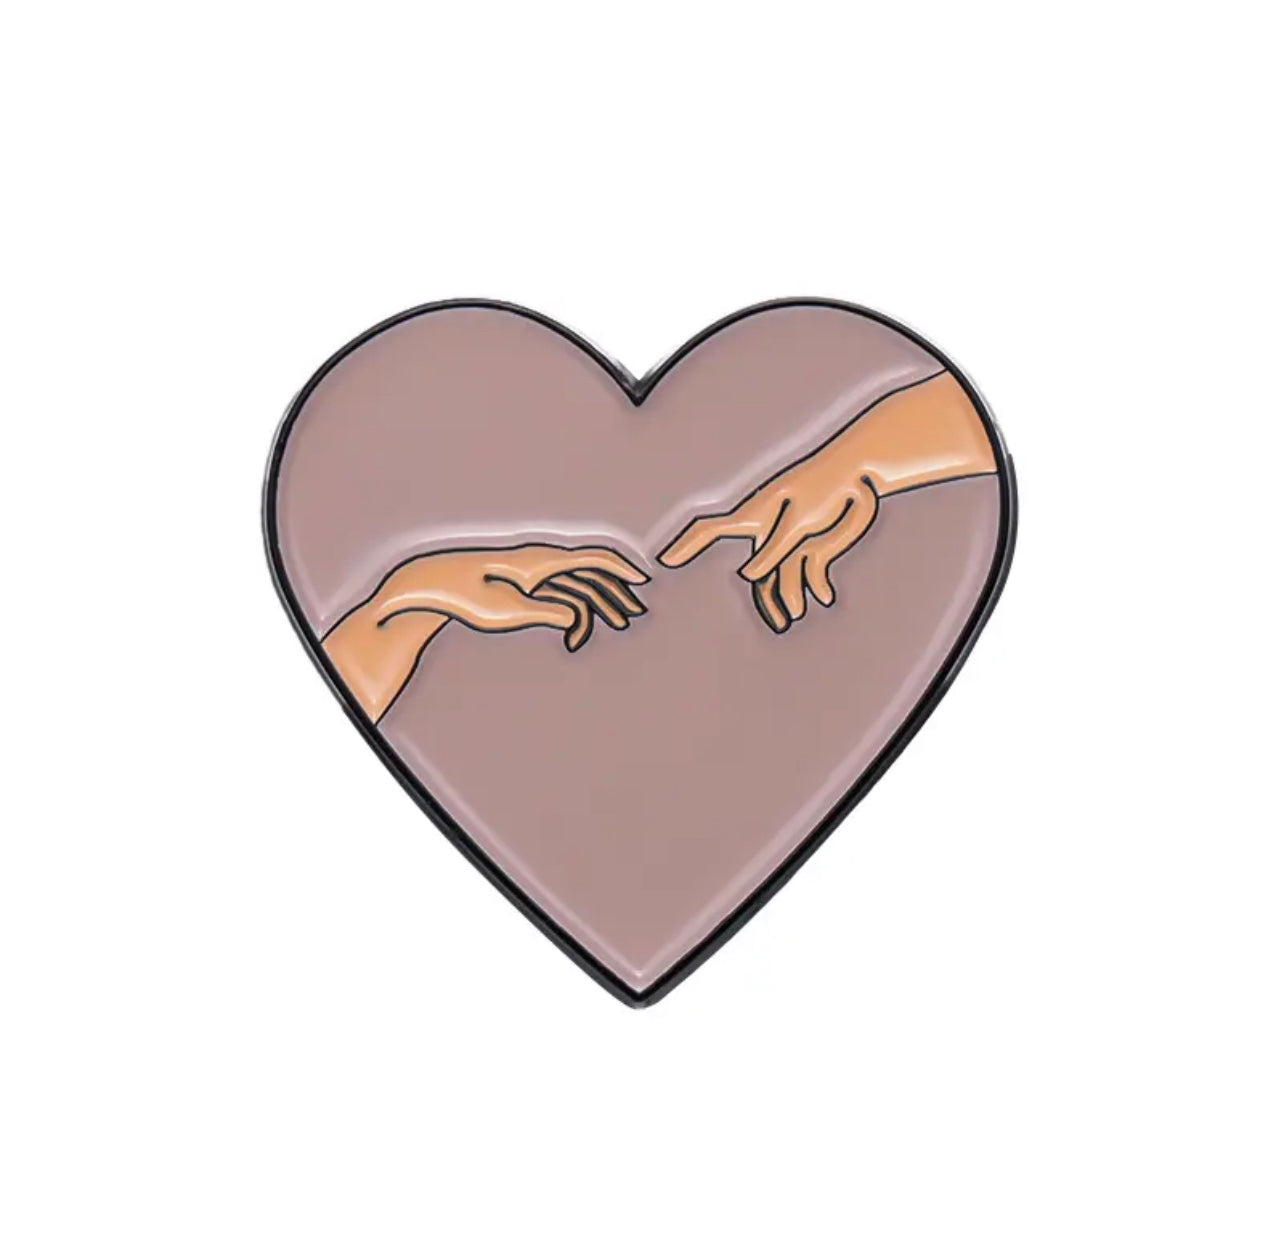 Michelangelo heart hands